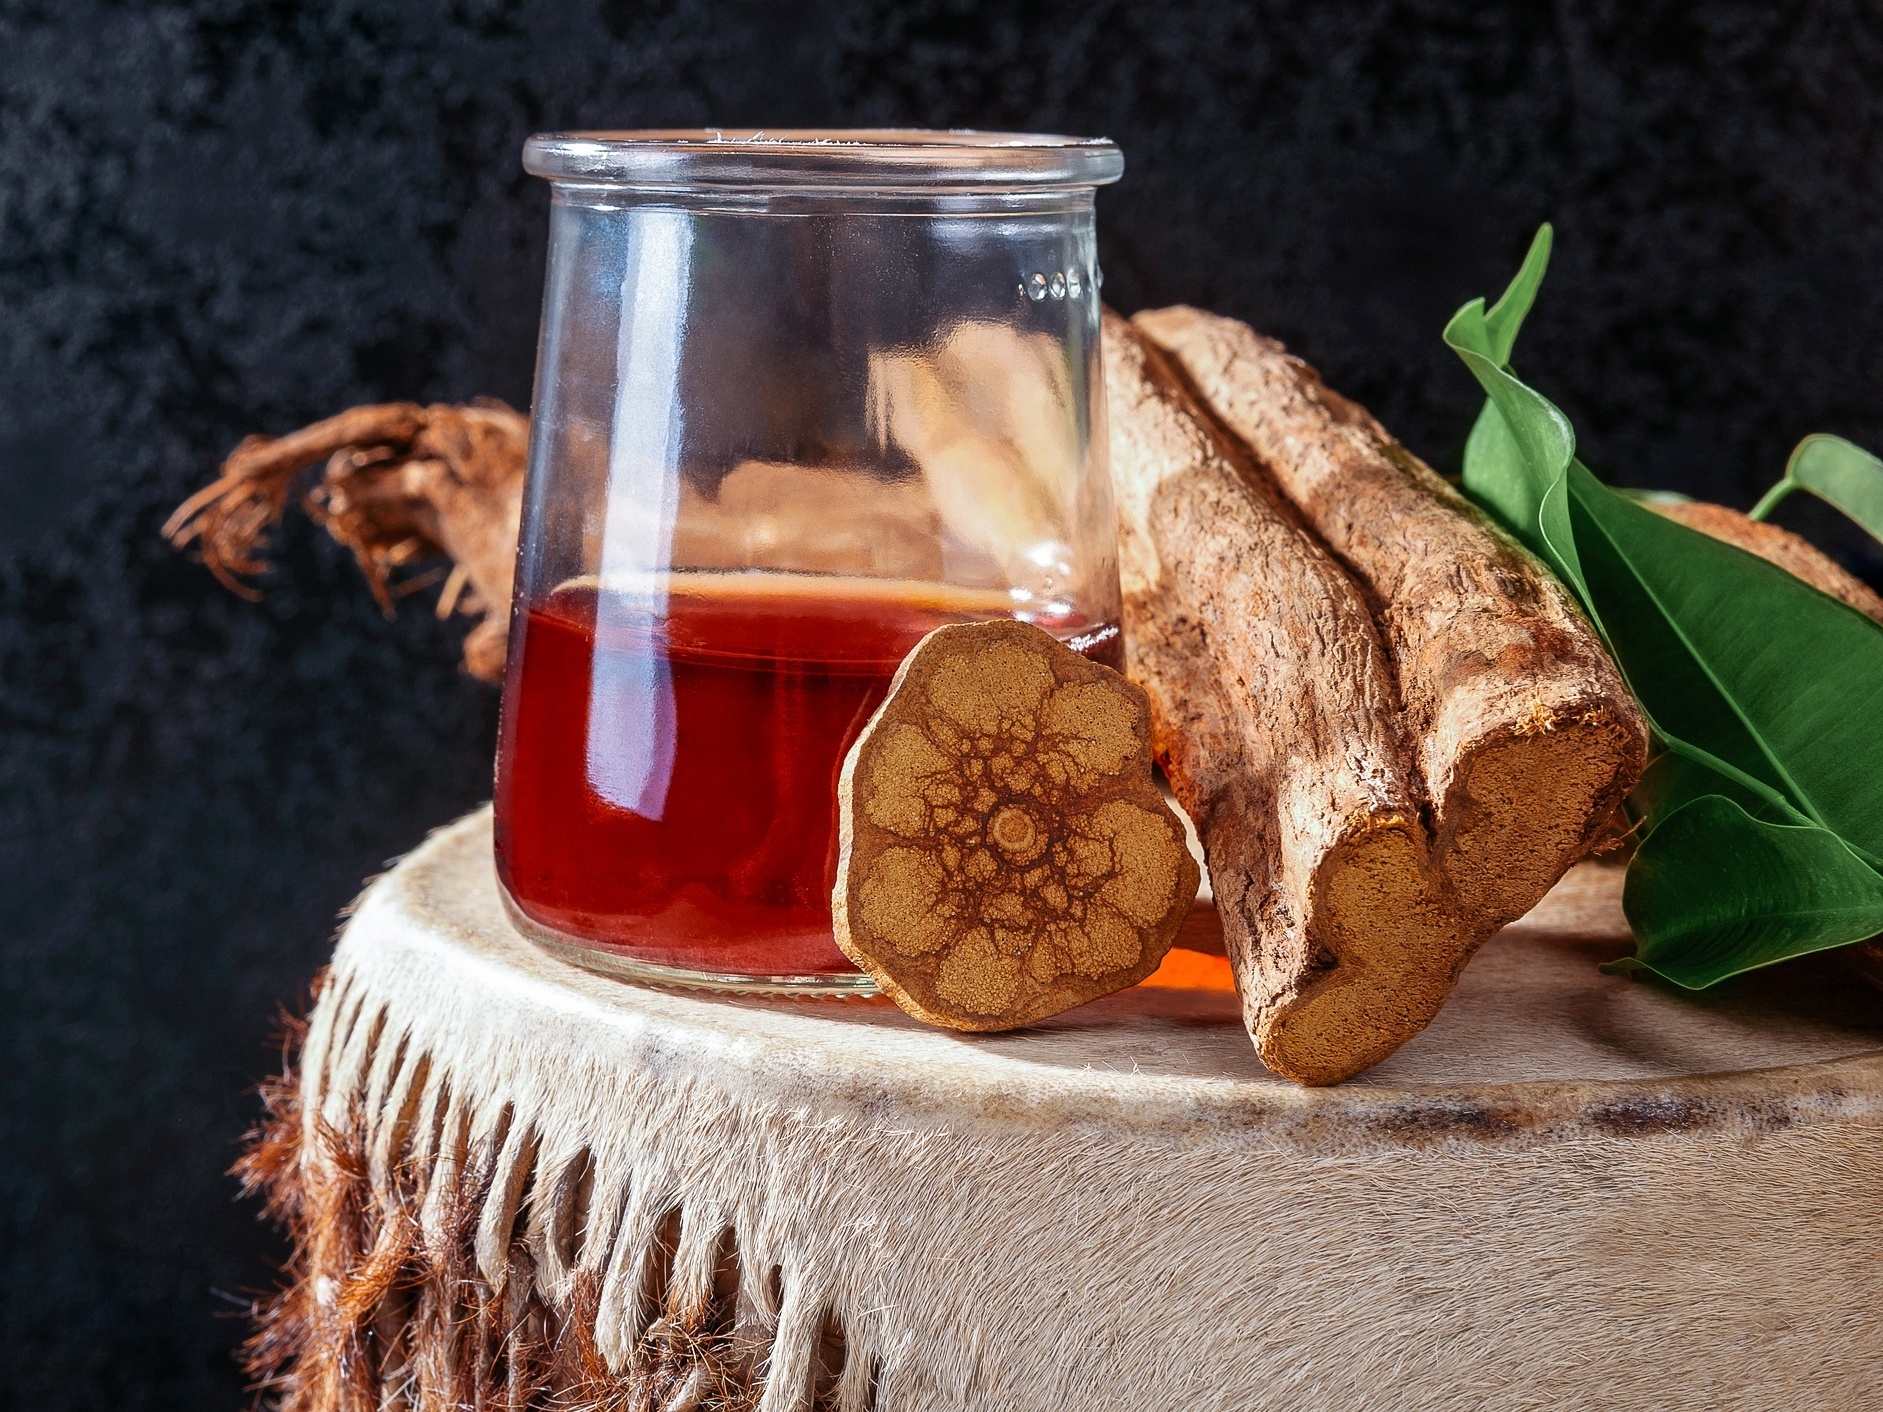  Čaj Santo Daime: více informací o nápoji a jeho účincích